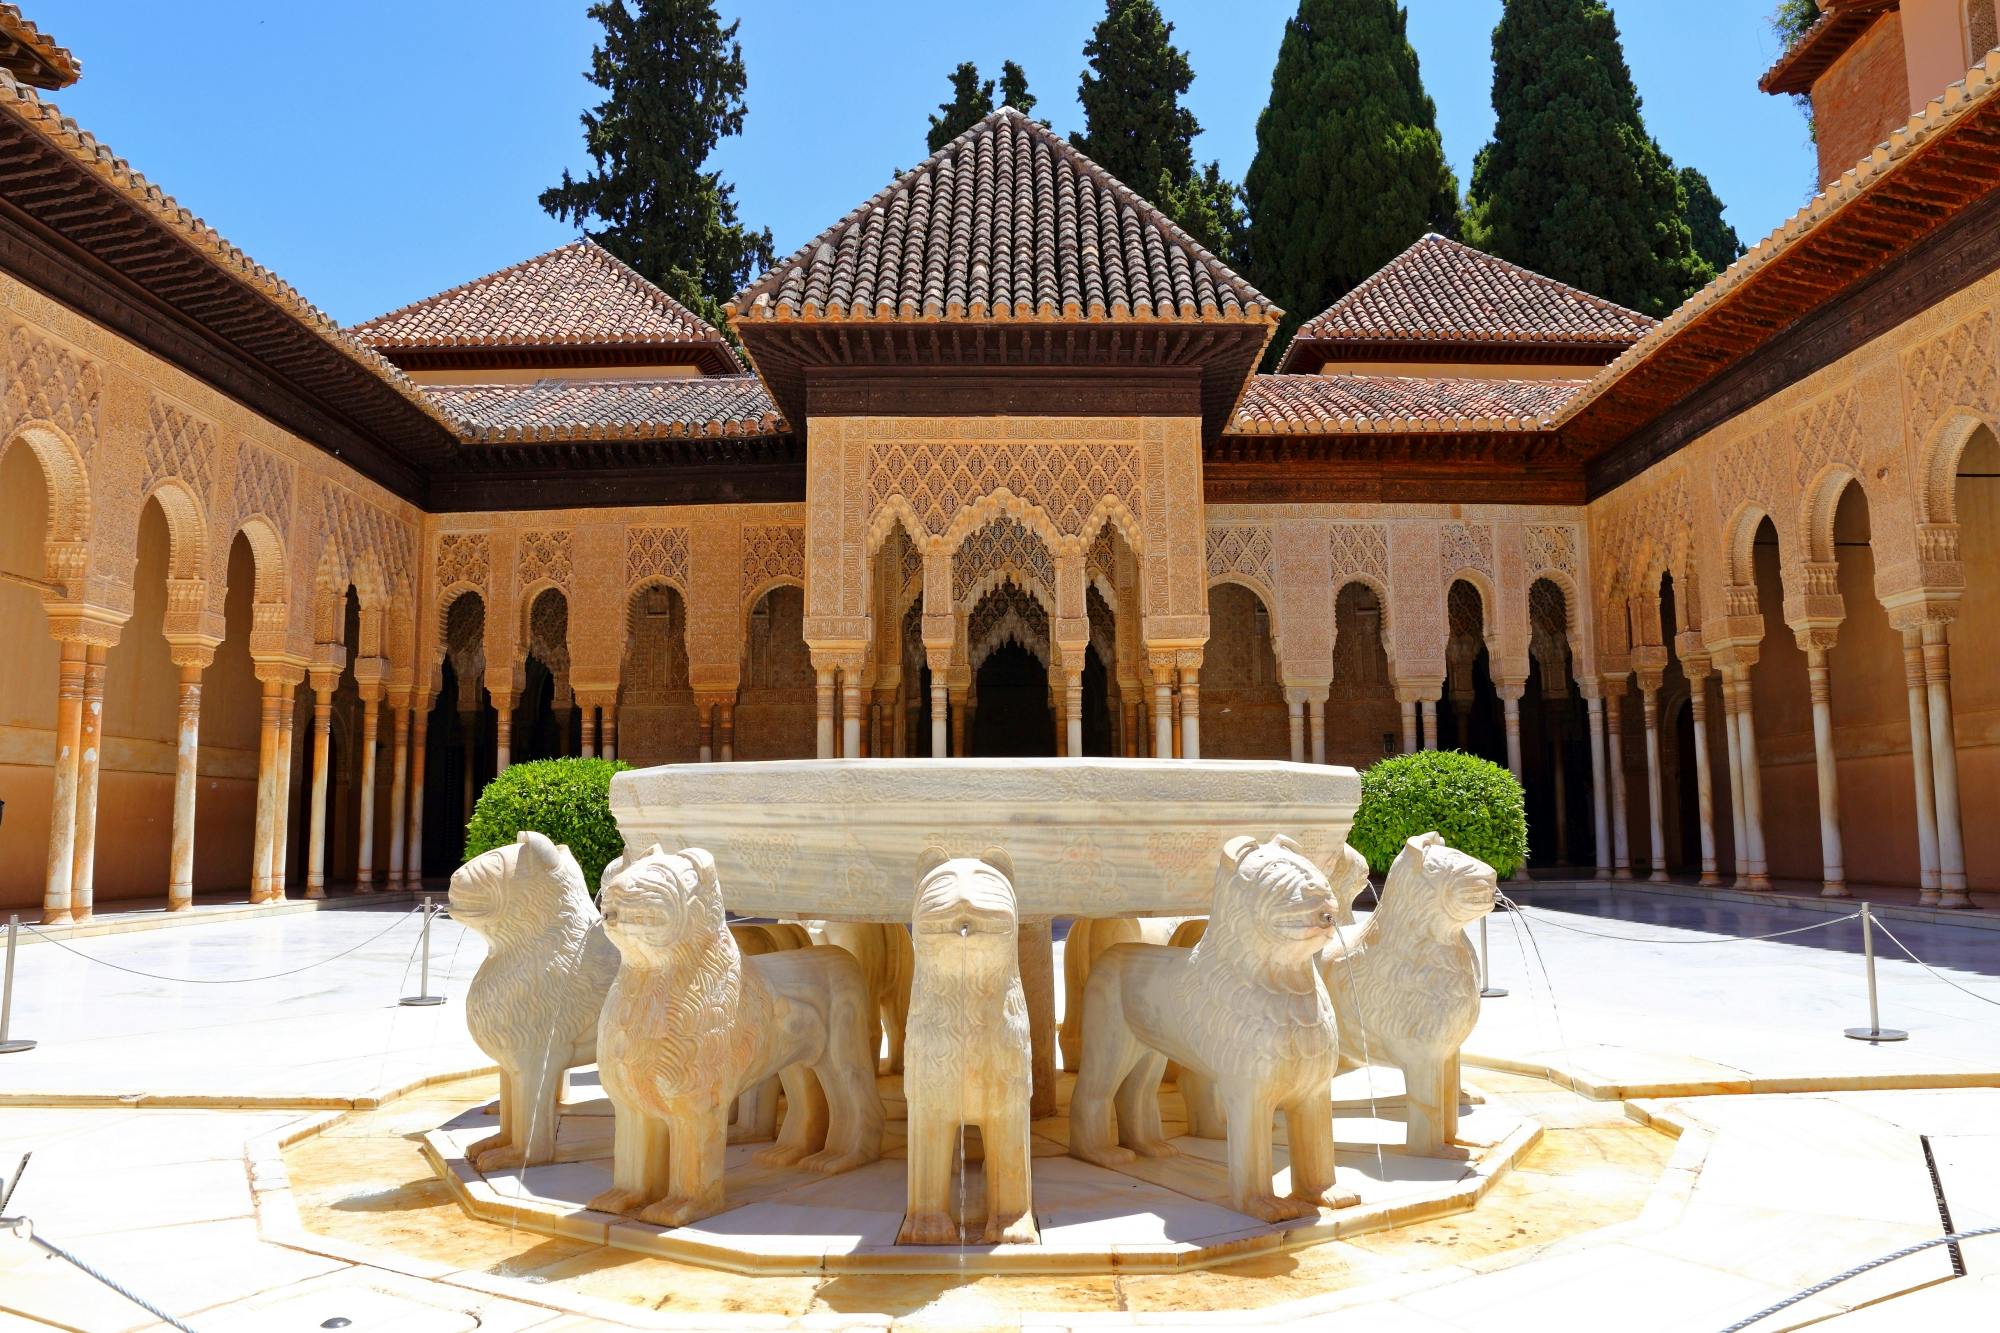 Pełny dostęp do Alhambry z biletami bez kolejki i wycieczką z przewodnikiem po włosku